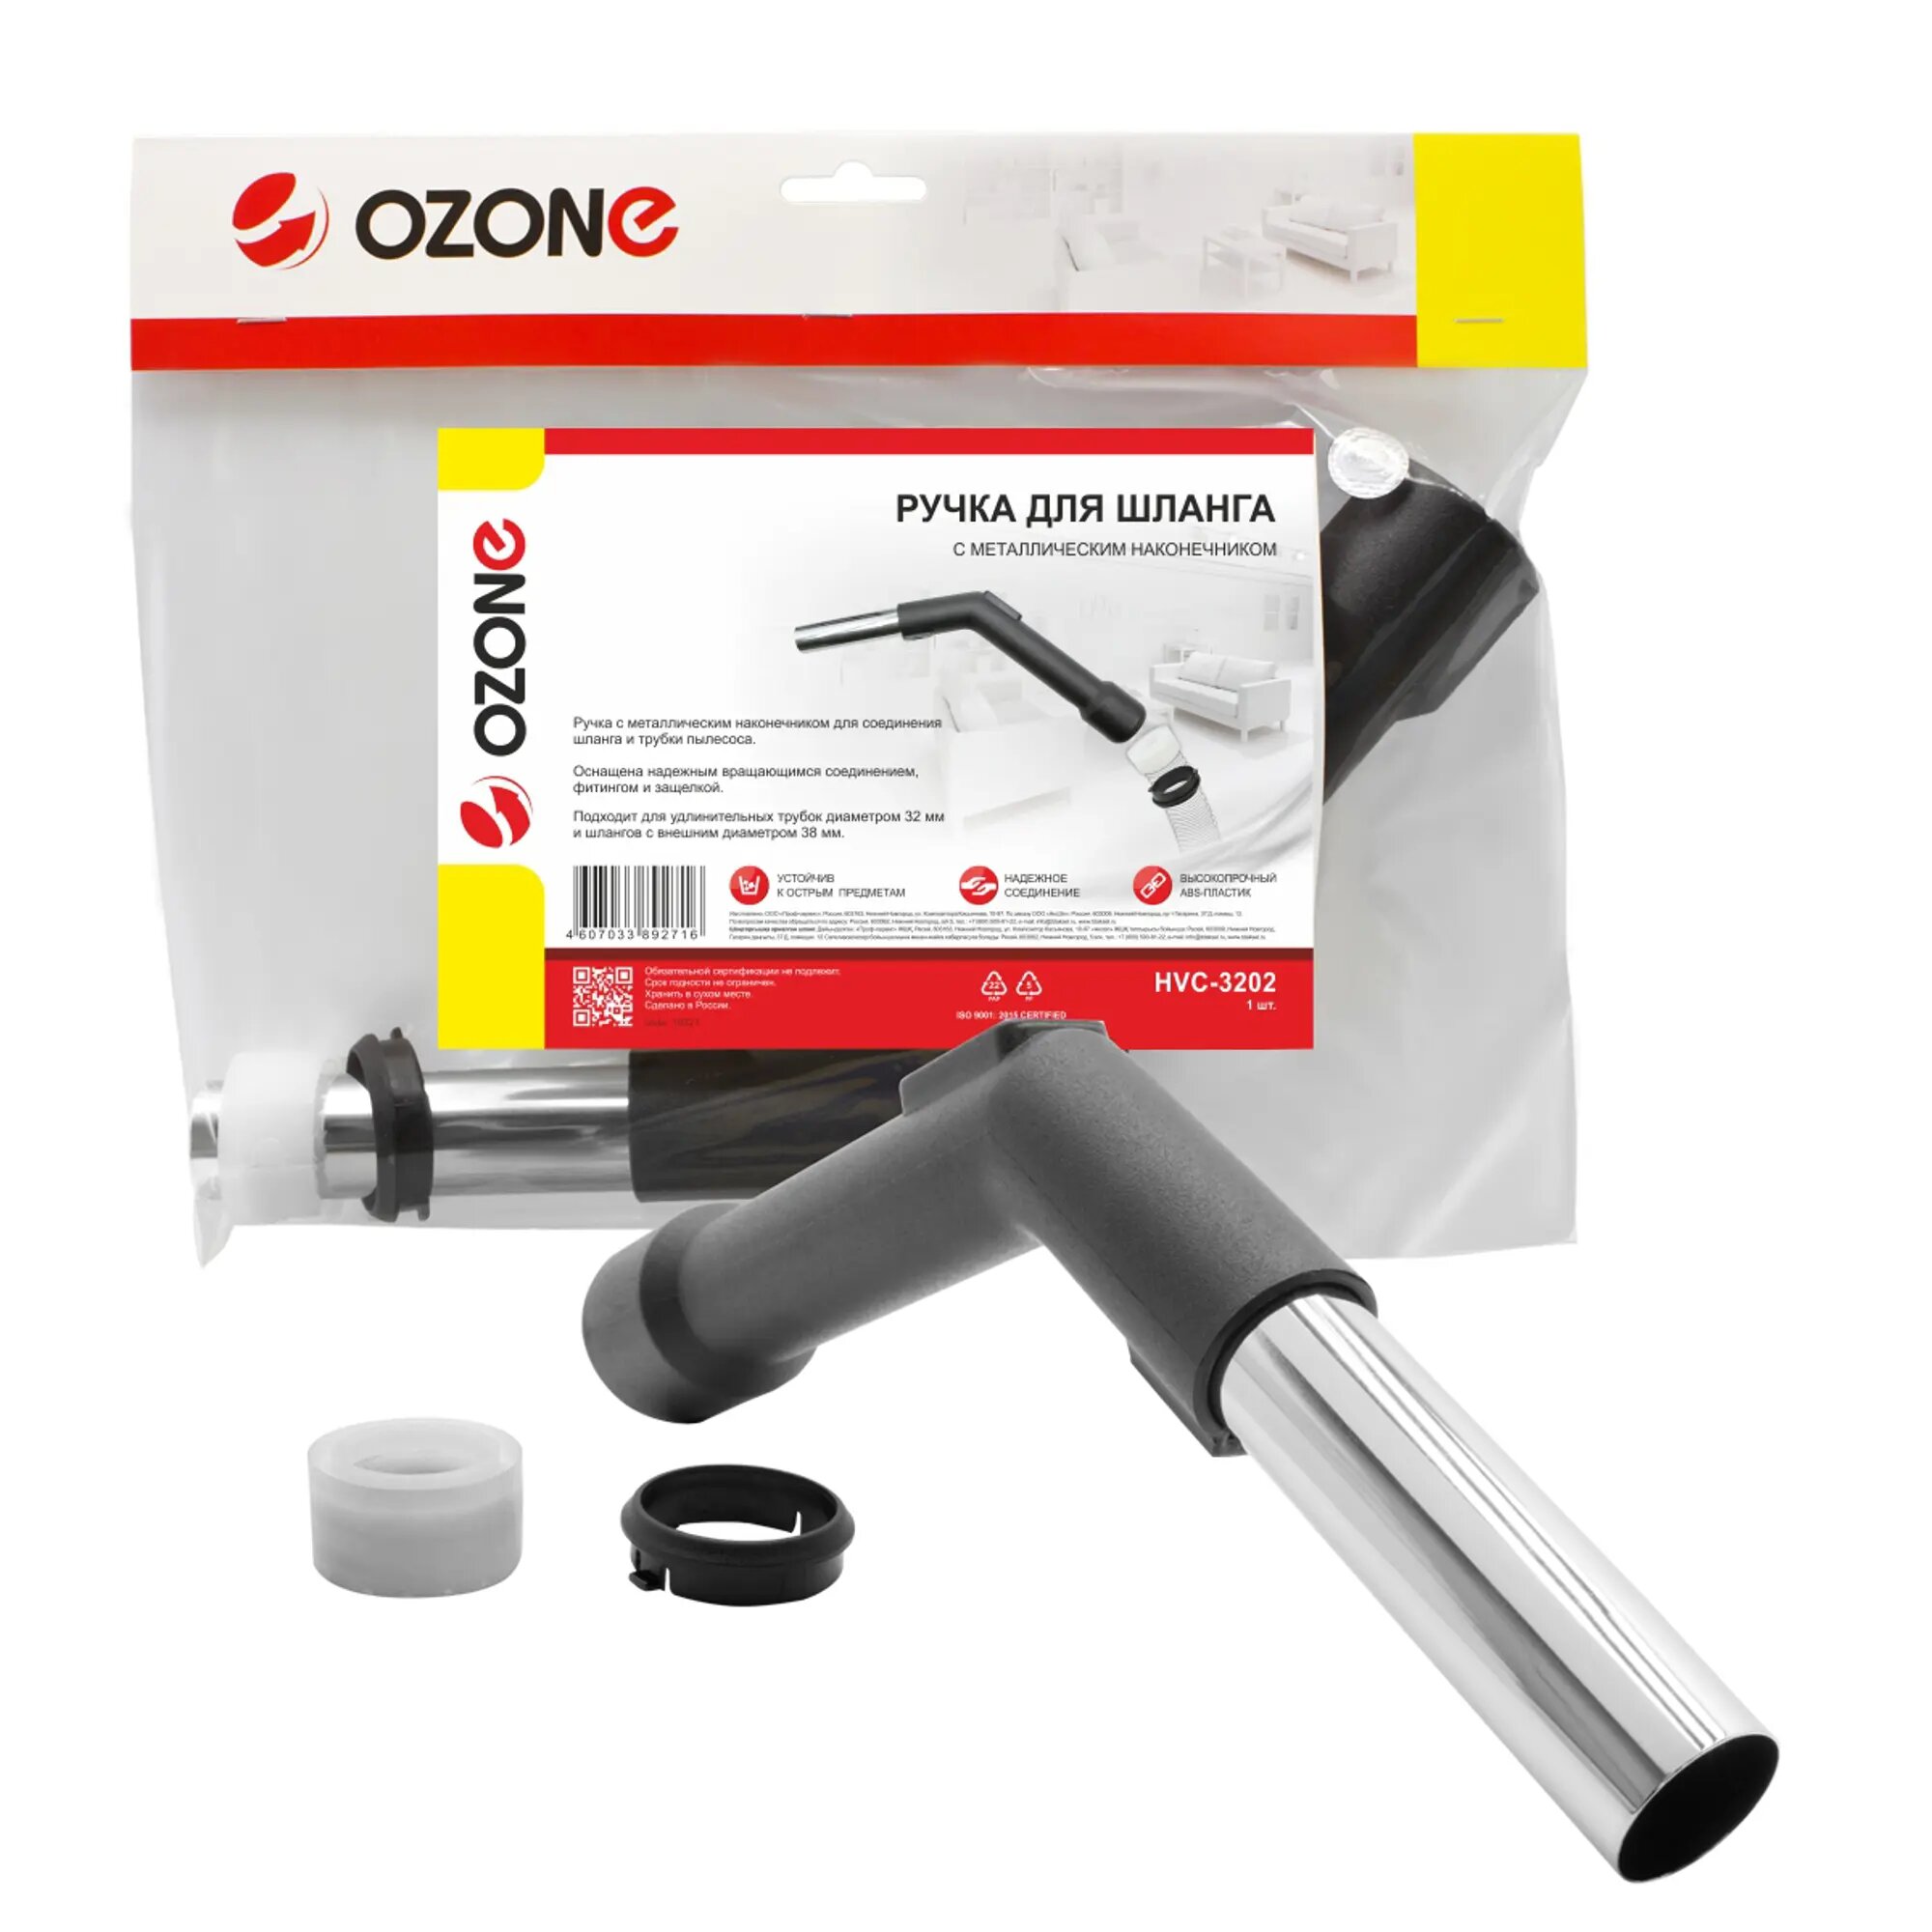 OZONE Ручка для шланга HVC-3202, 1 шт. - фотография № 8